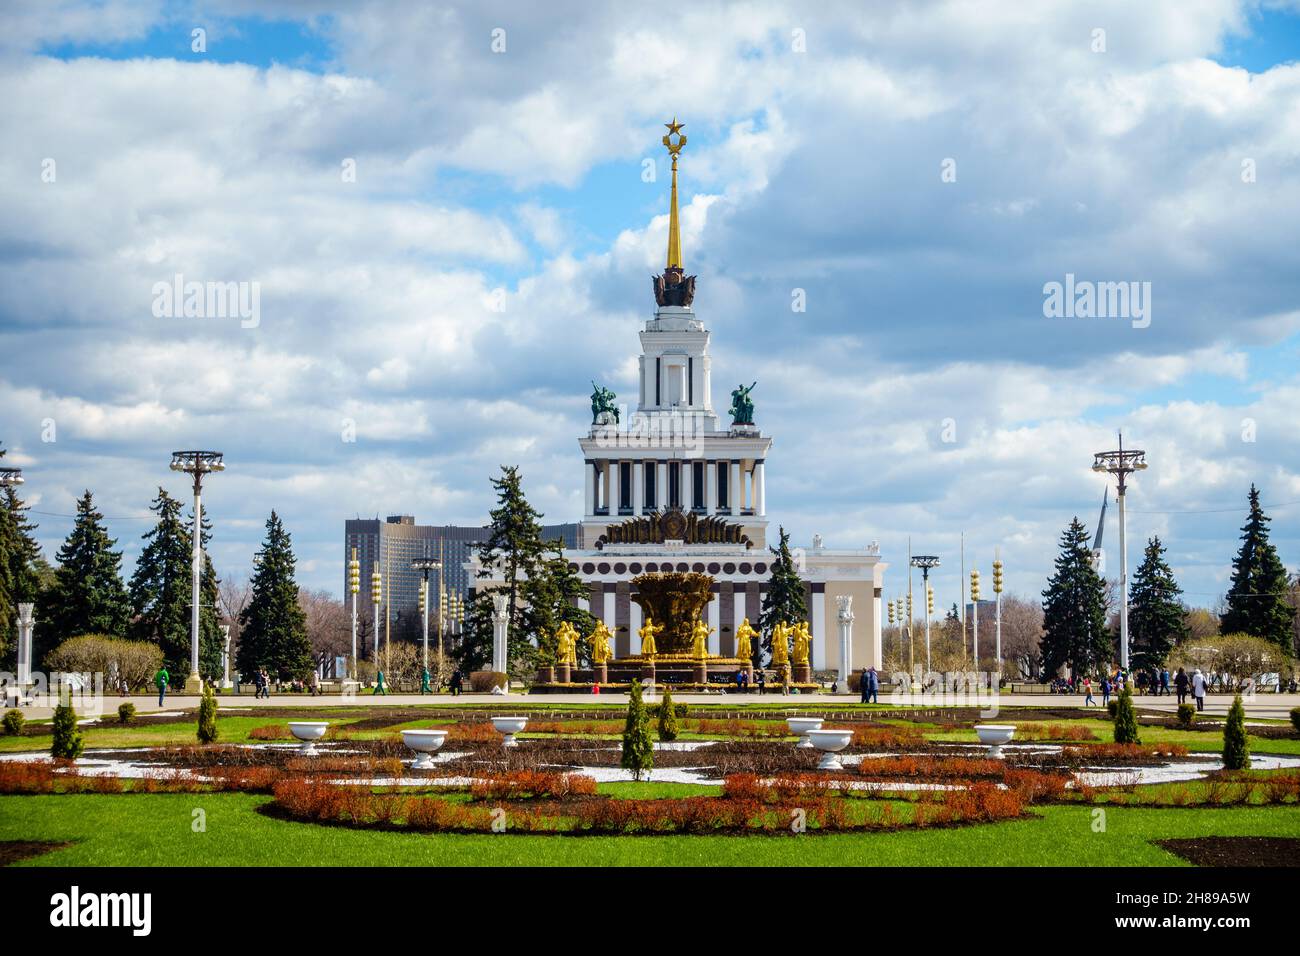 Moscou, Russie, 23 avril 2016 : Pavillon central et fontaine de l'amitié des nations à l'exposition des réalisations de l'économie nationale à Mosco Banque D'Images